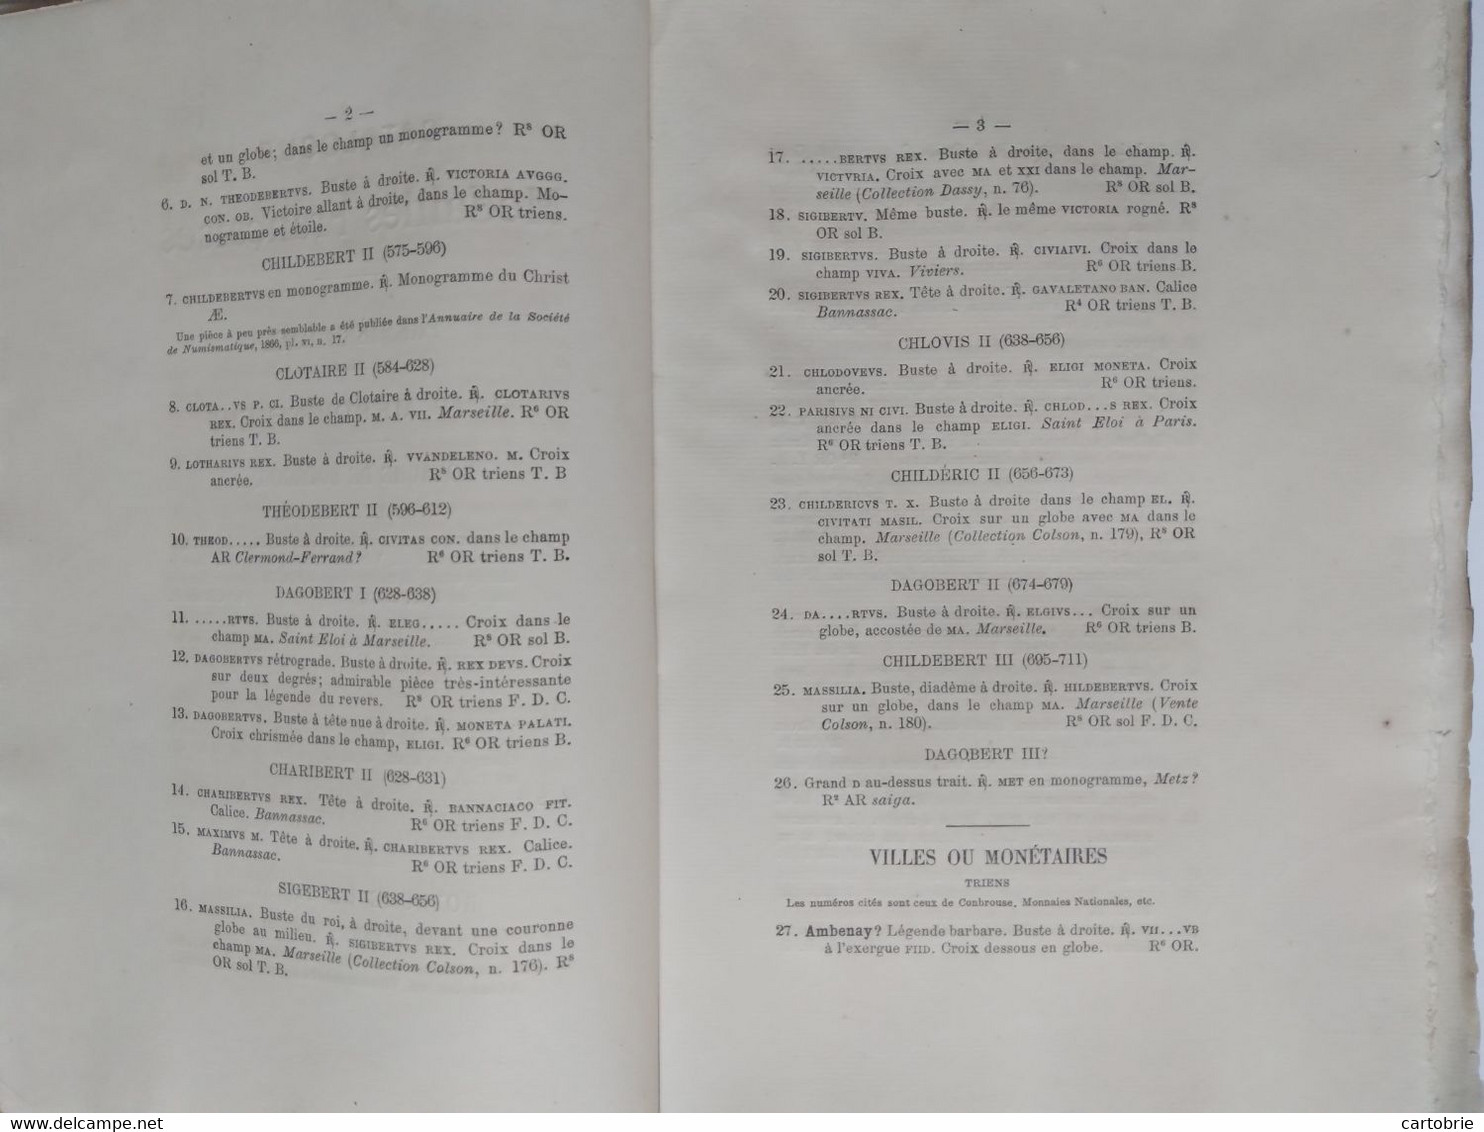 Catalogue vente aux enchères (1878) MONNAIES ROYALES et Seigneuriales de France (Collection M. J.-B.-A. JARRY d'Orléans)